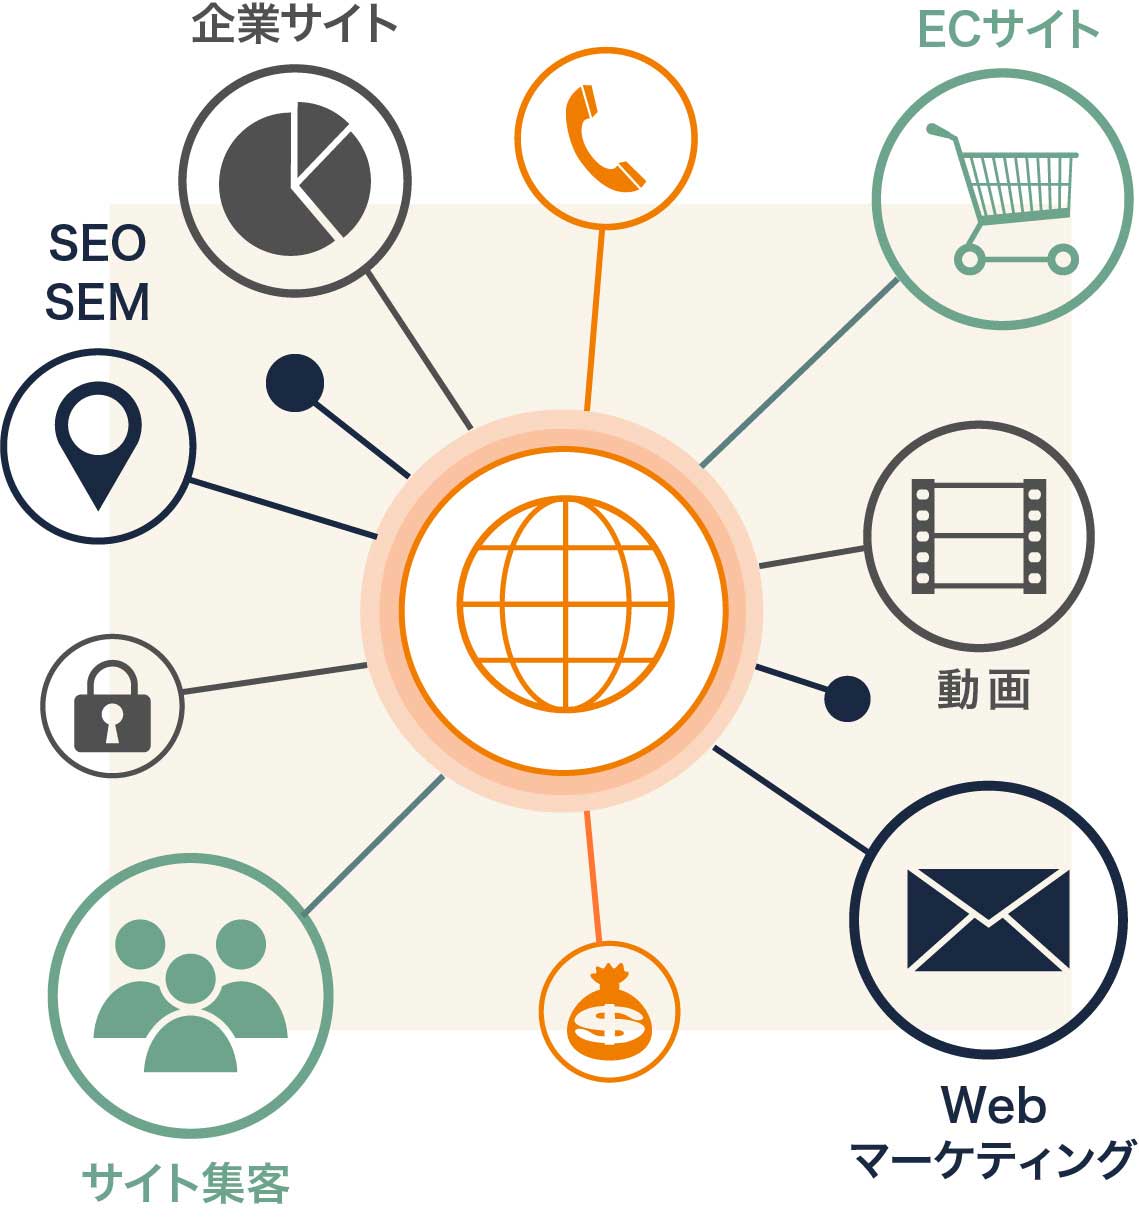 企業サイト ECサイト SEO SEM SSL 動画 サイト集客 Webマーケティング